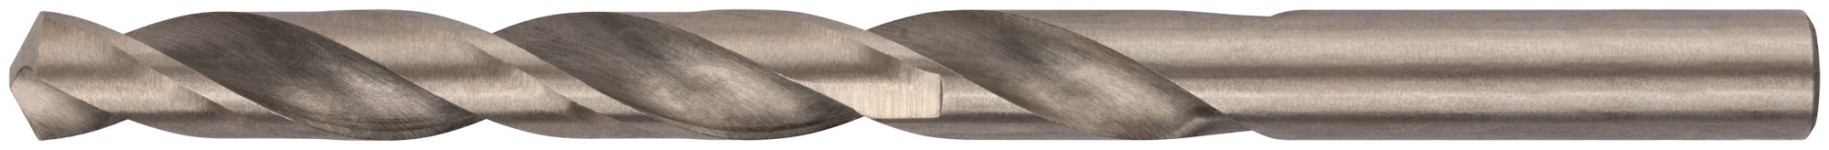 Сверло по металлу HSS полированное в блистере 9,0 мм ( 1 шт.)